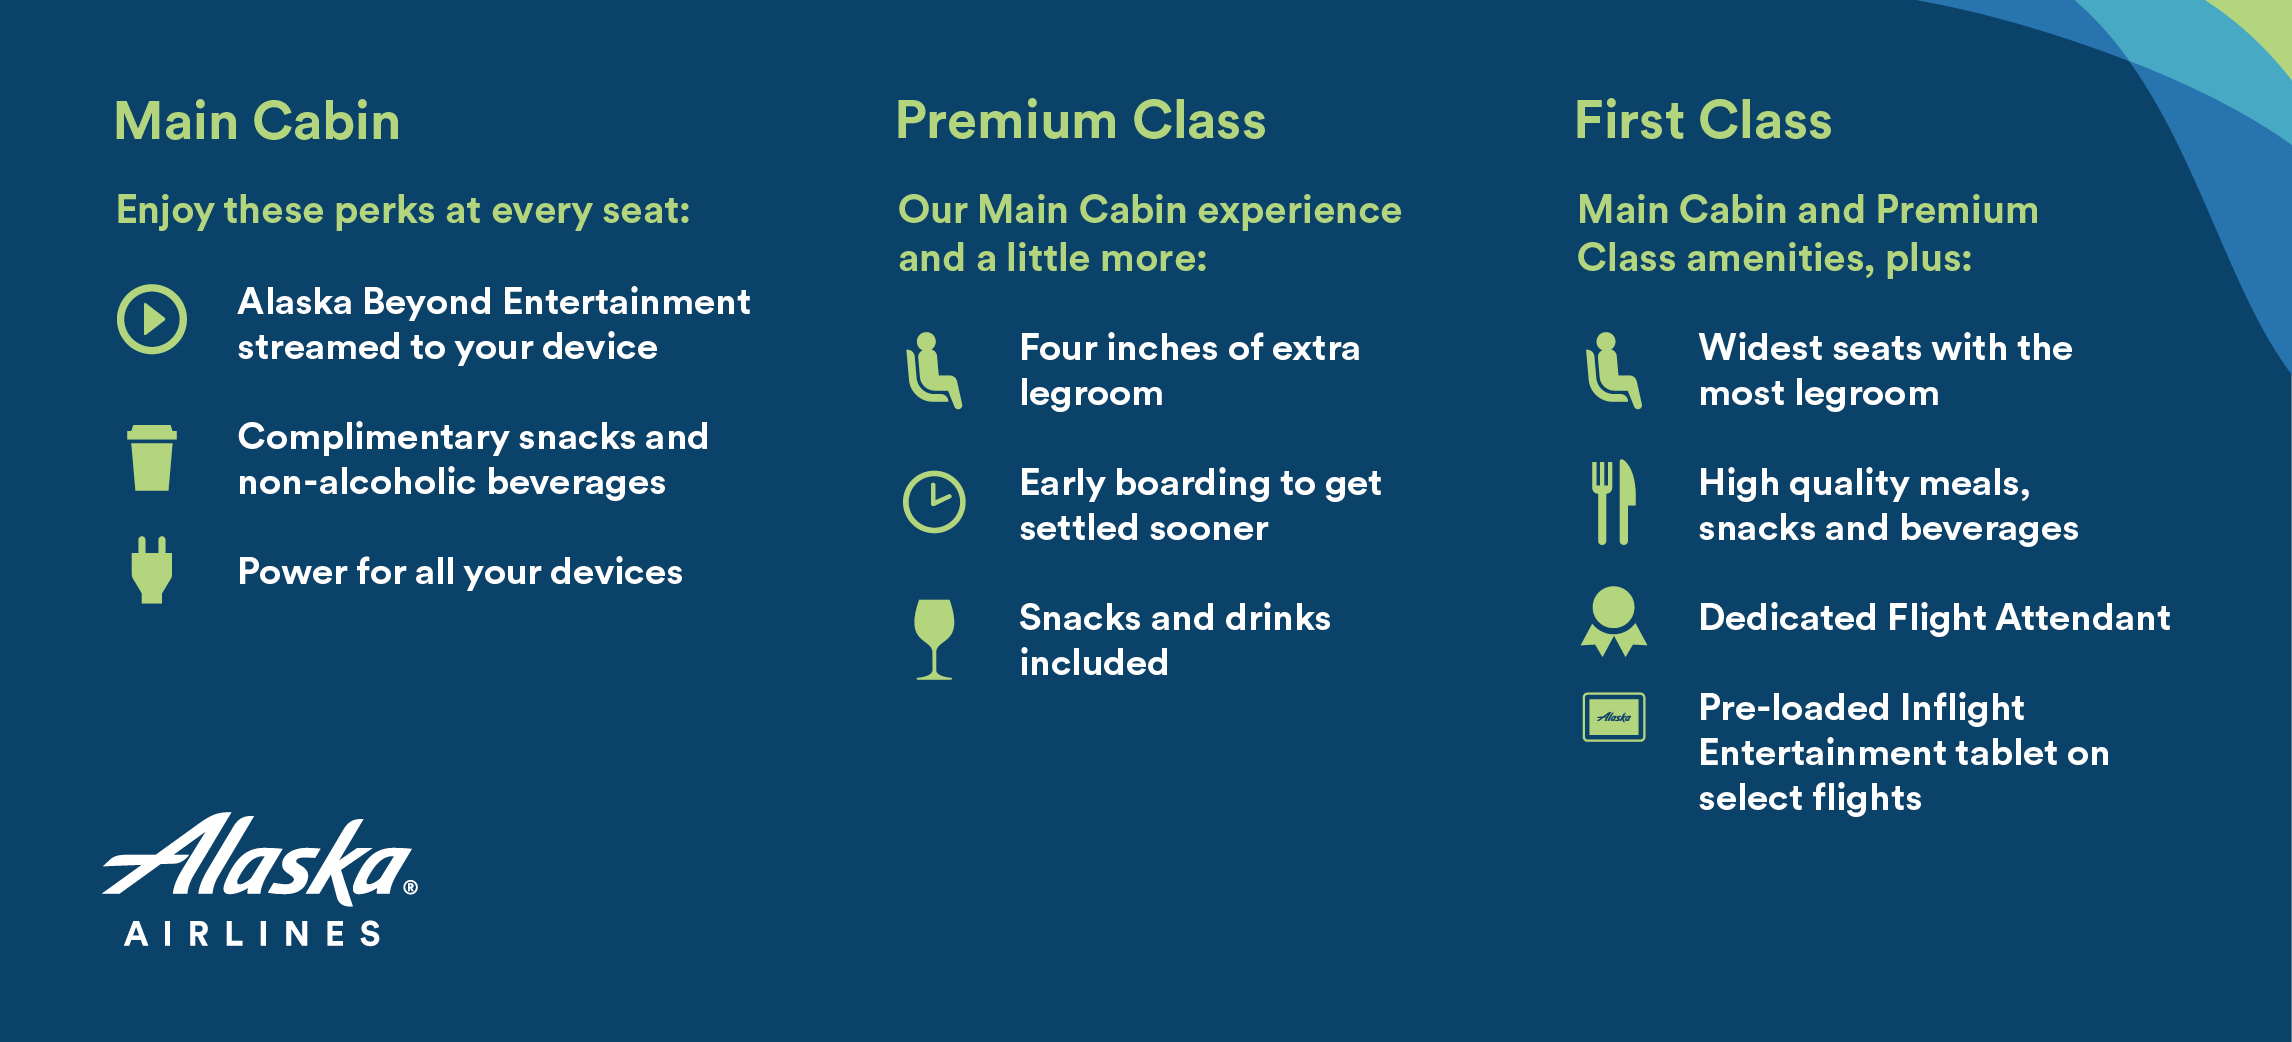 Alaska Airlines premium class